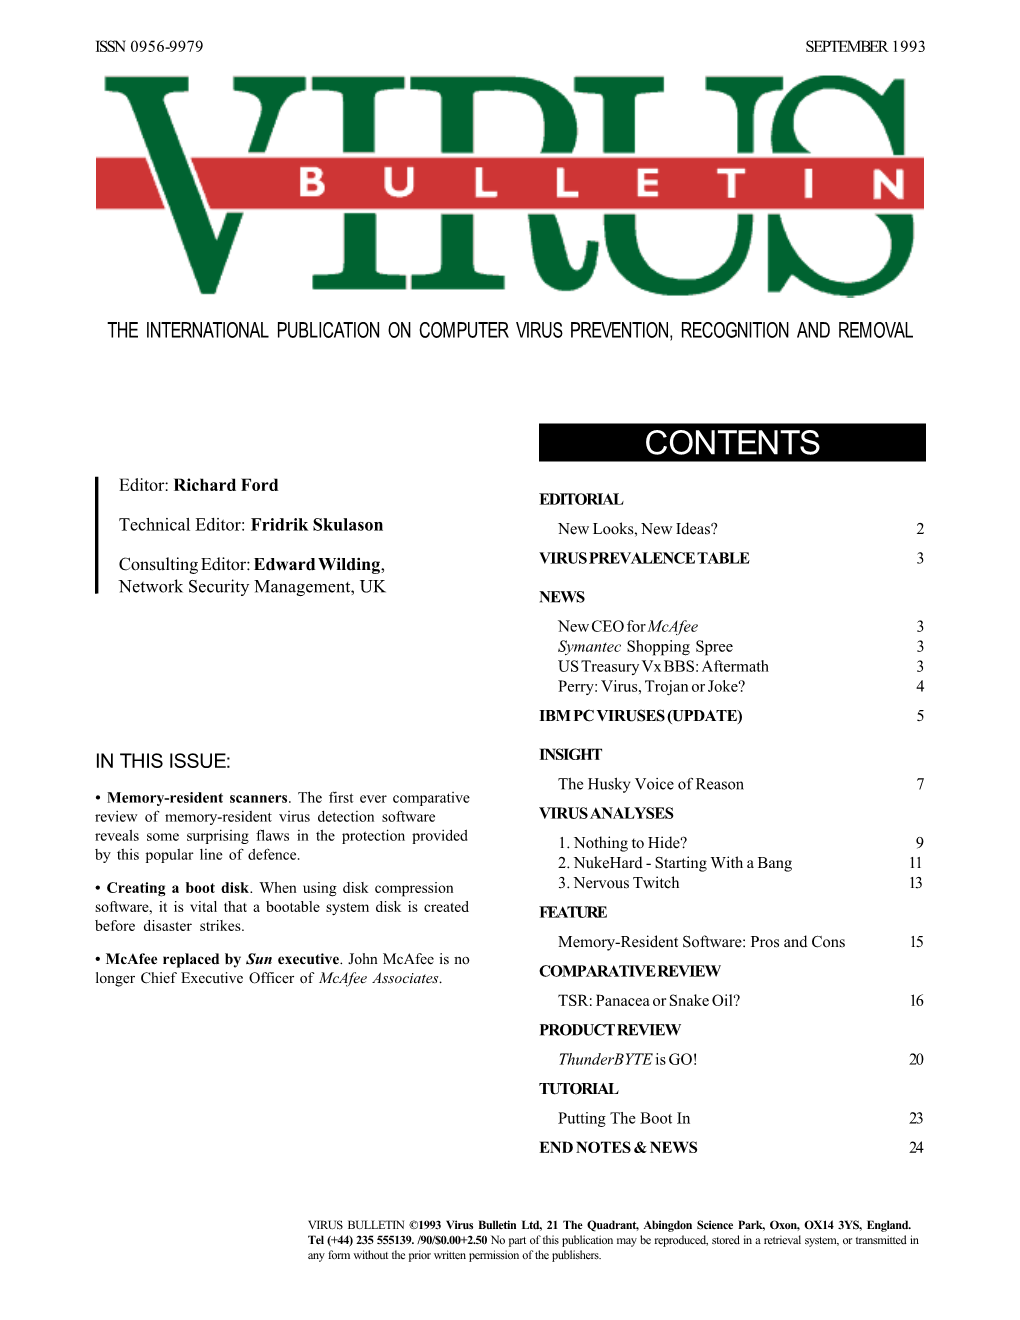 Virus Bulletin, September 1993